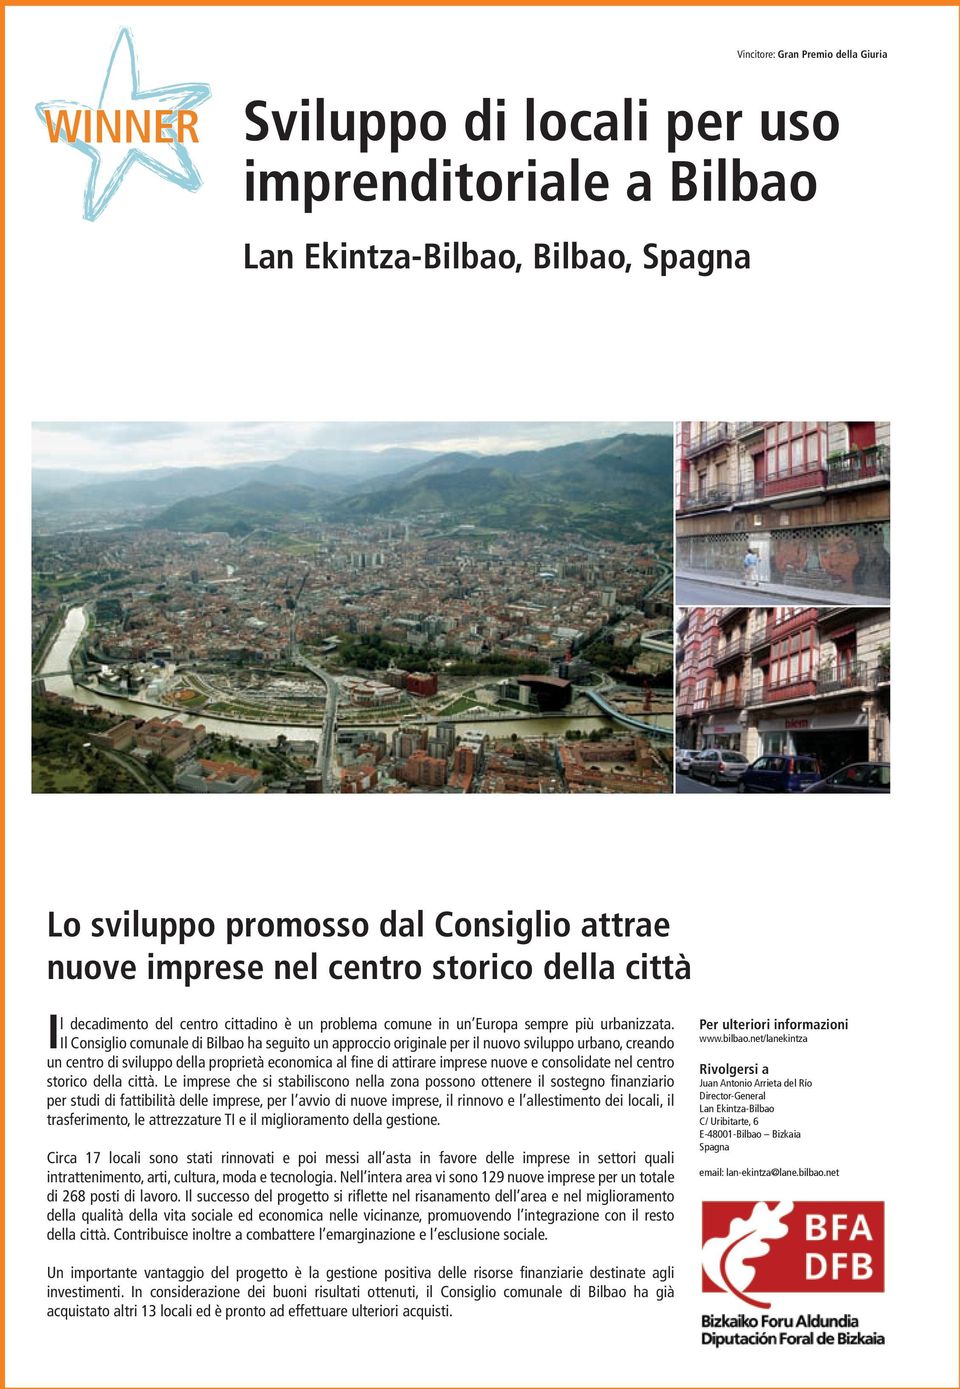 Il Consiglio comunale di Bilbao ha seguito un approccio originale per il nuovo sviluppo urbano, creando un centro di sviluppo della proprietà economica al fine di attirare imprese nuove e consolidate